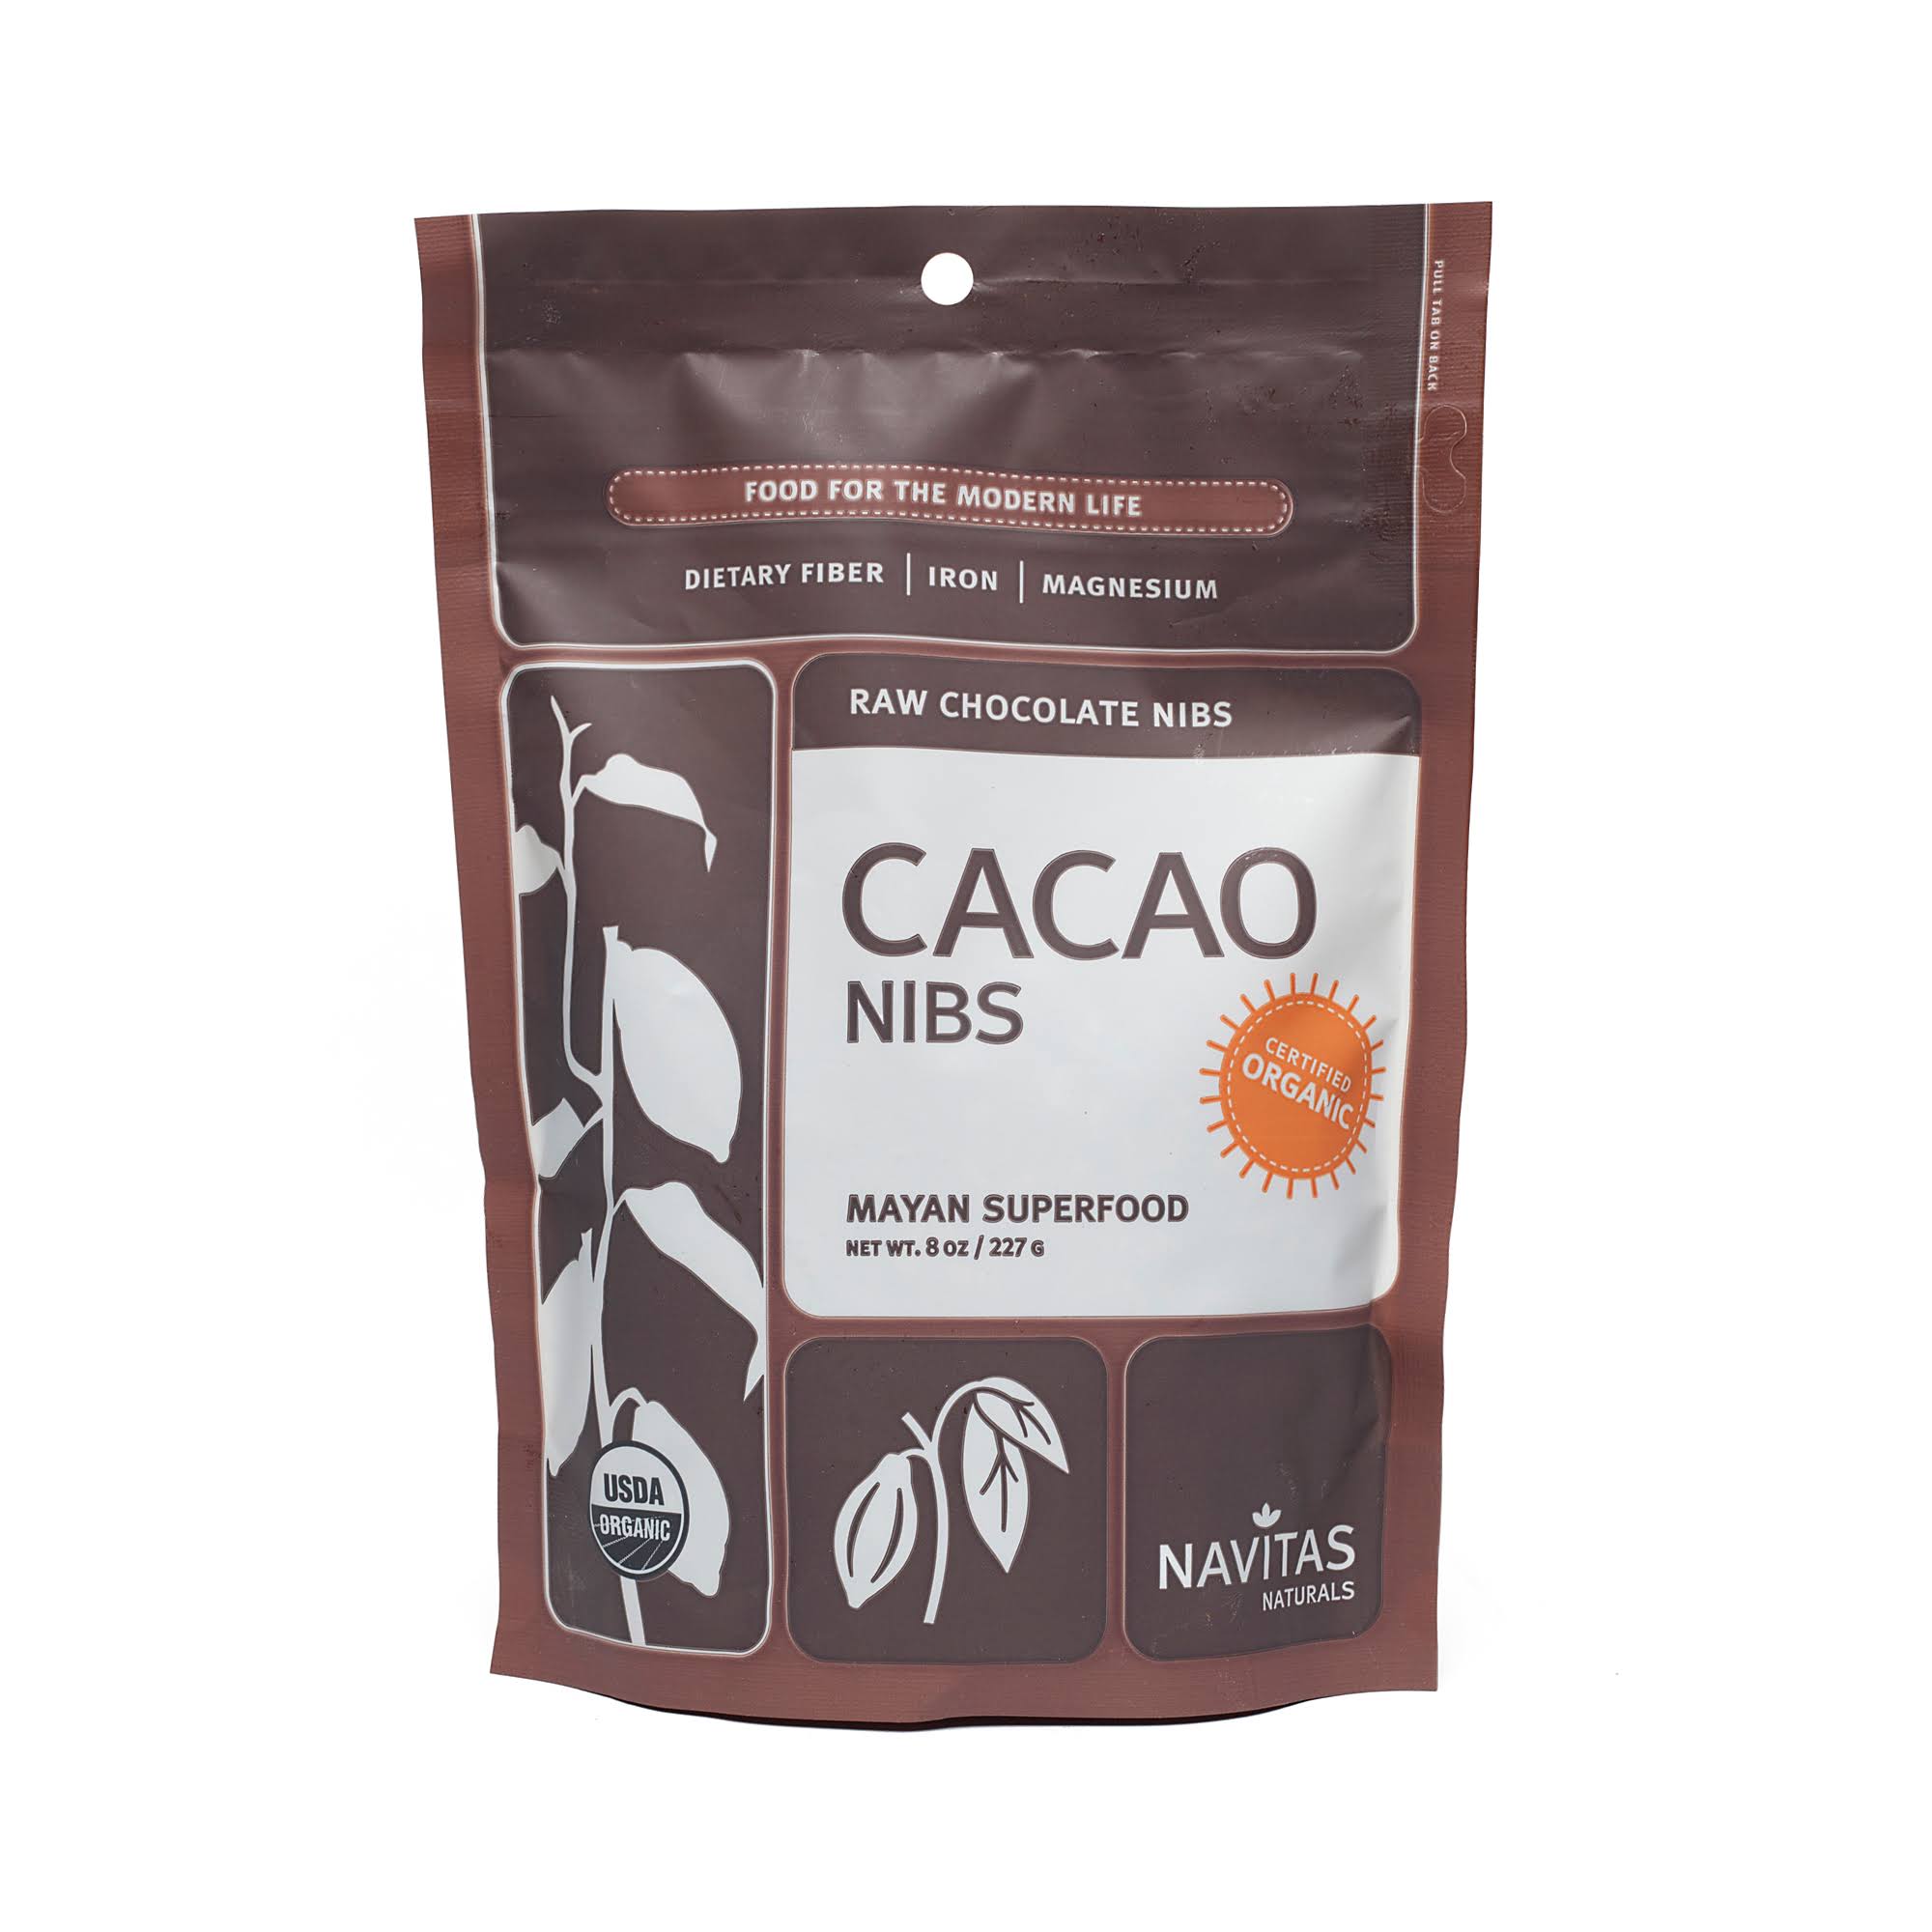 Navitas Naturals Organic Cacao Nibs